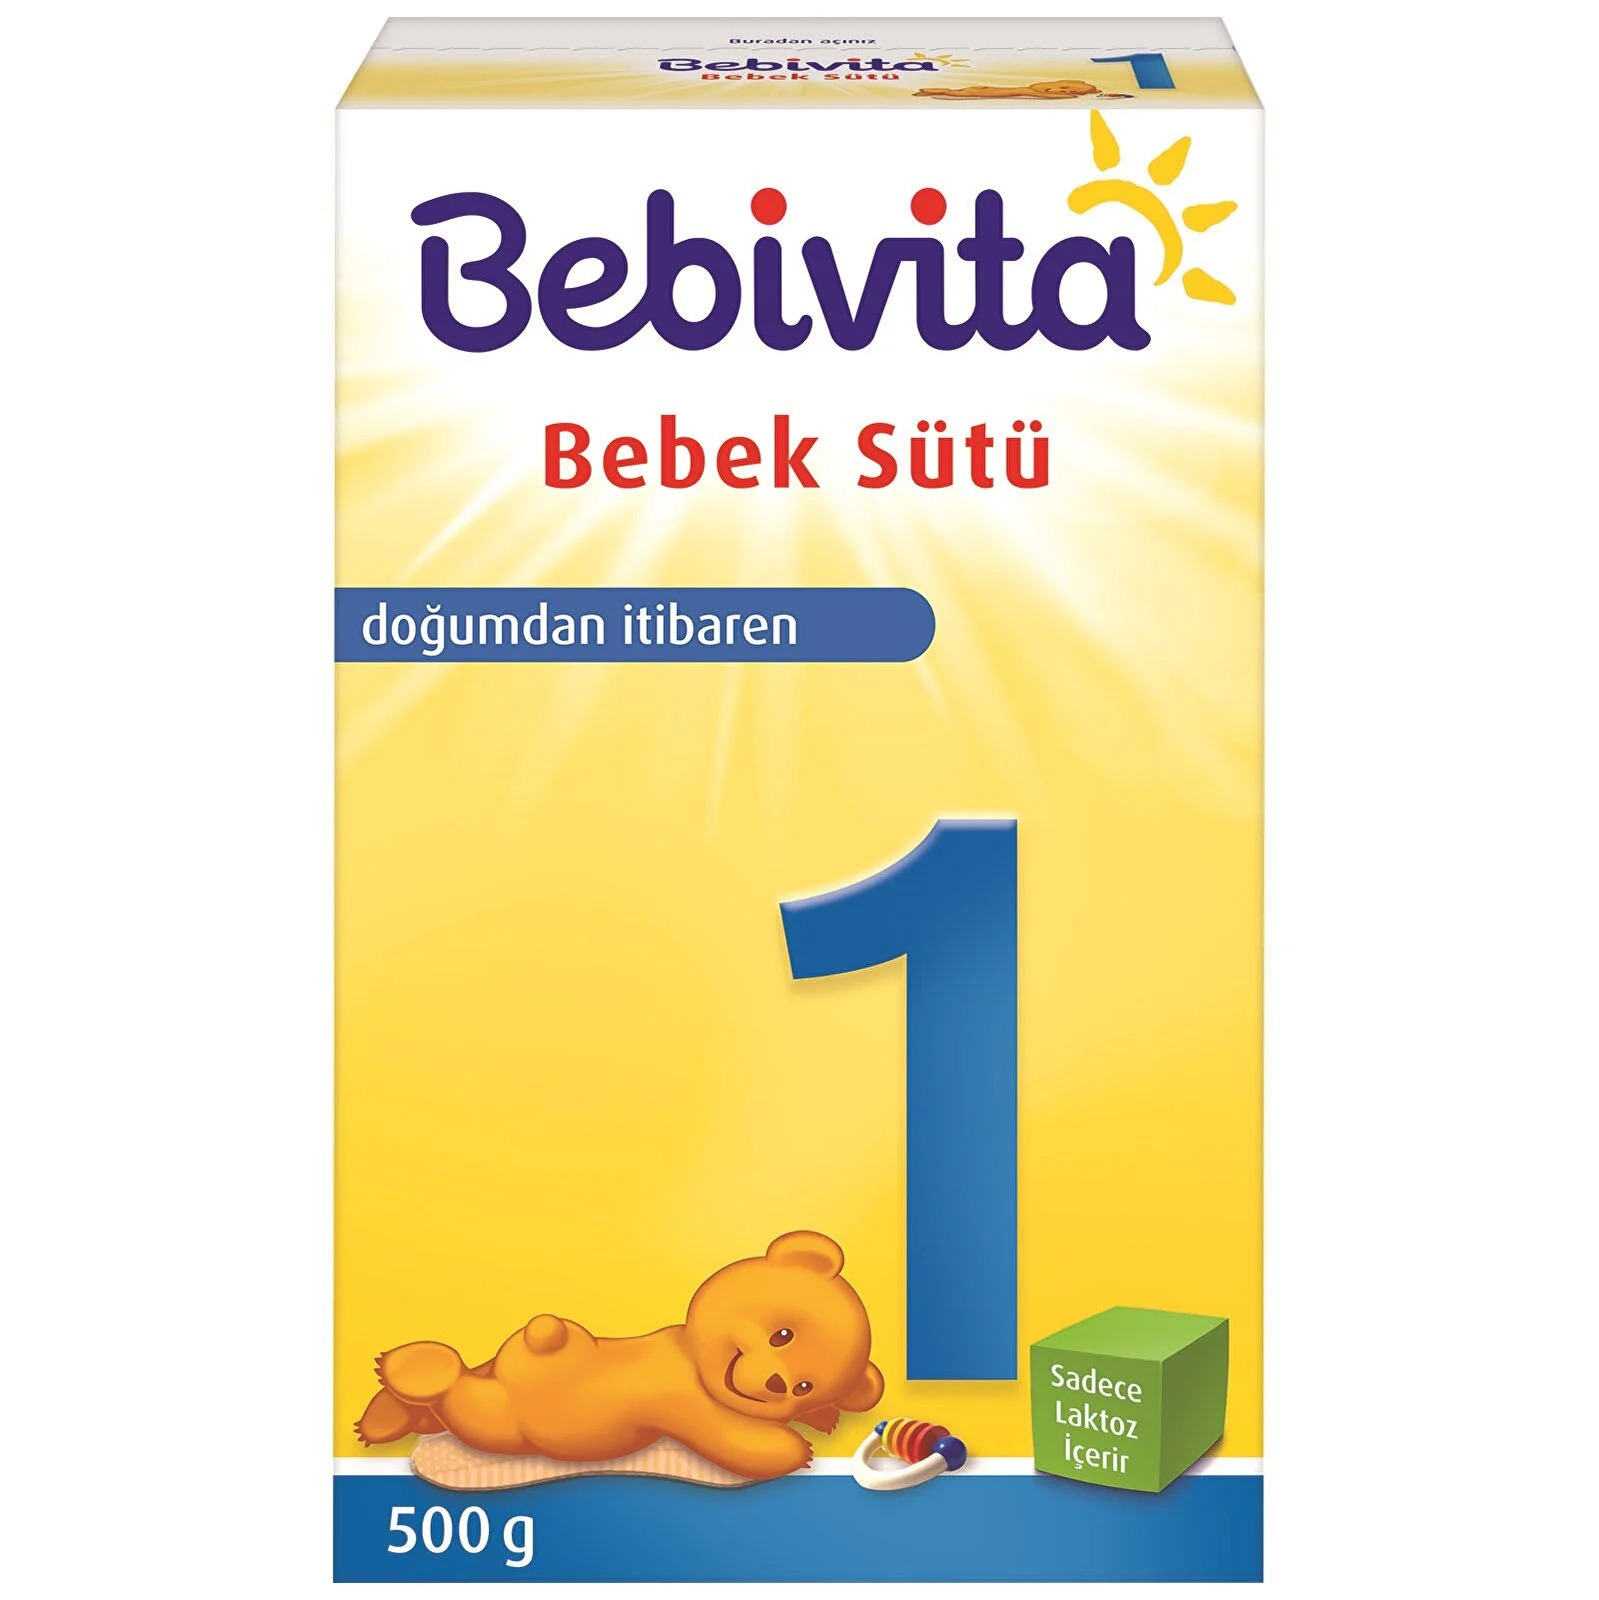 Bebivita 1 Bebek Sütü 500 gr